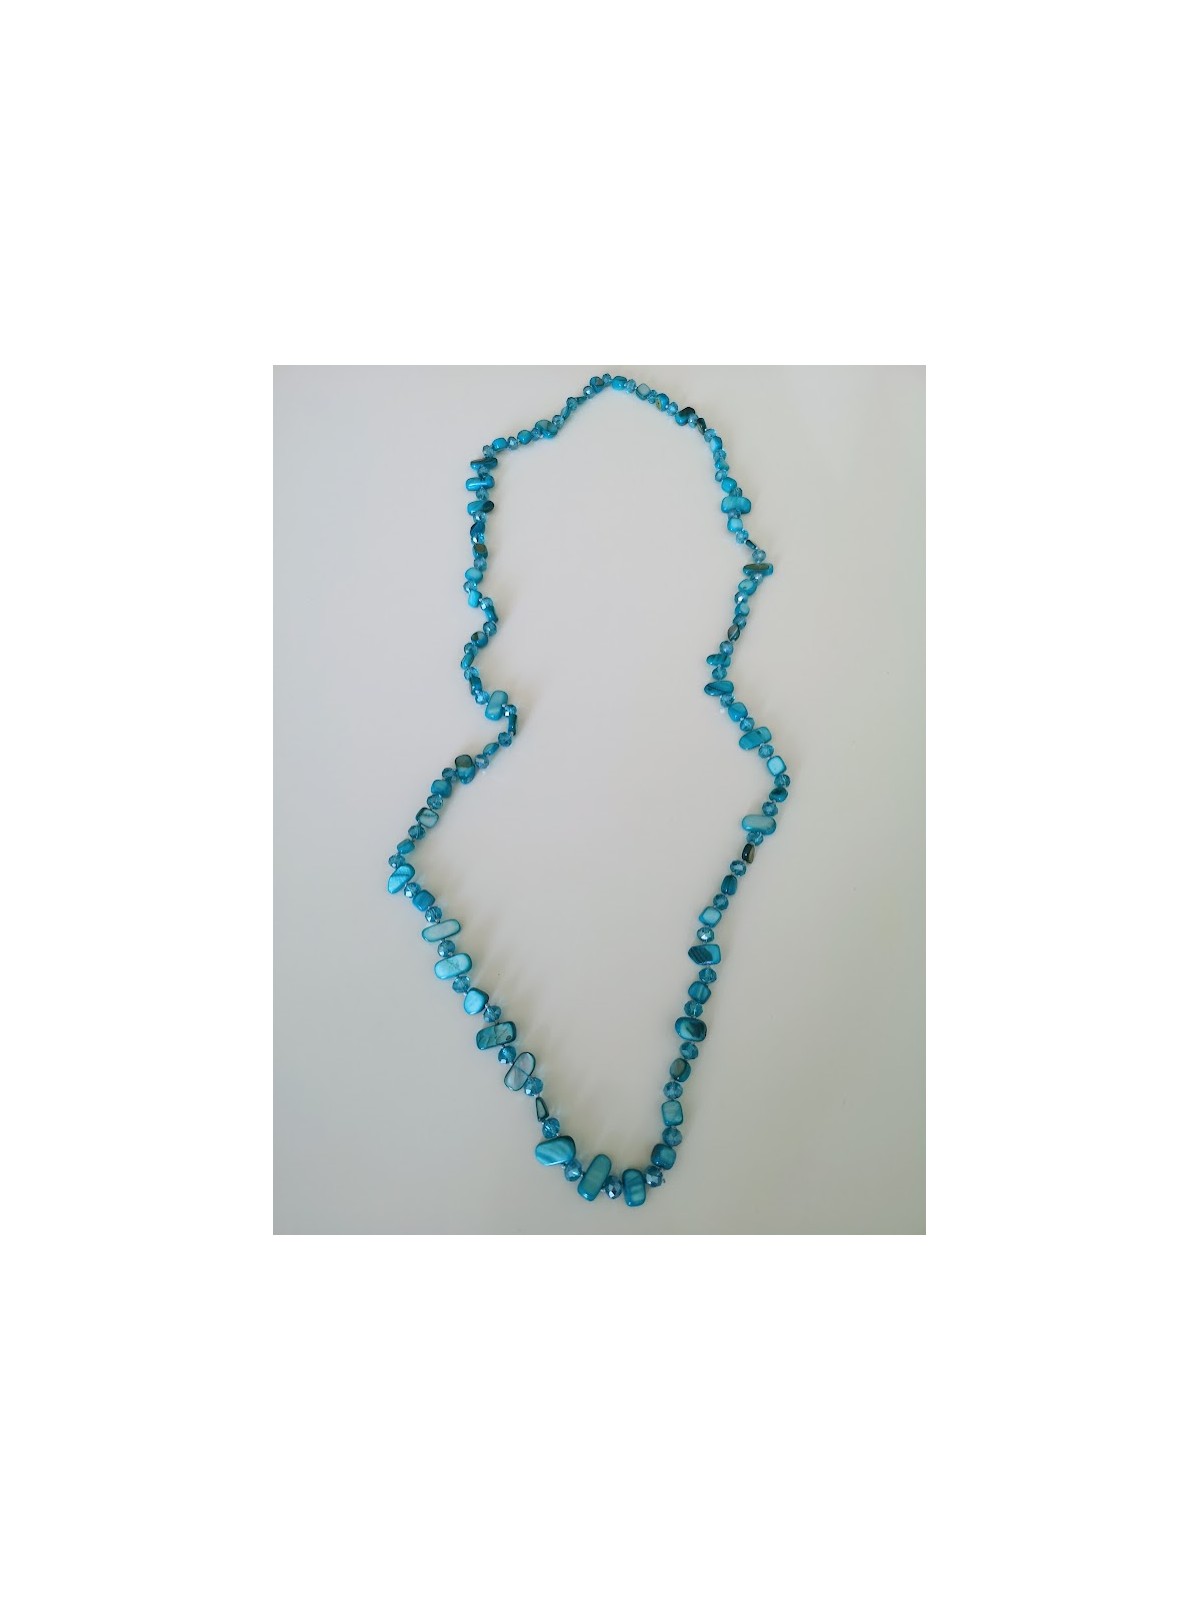 Sautoir avec perles bleues l 2 vue perles l Tilleulmenthe mode boutique de vêtements femme en ligne